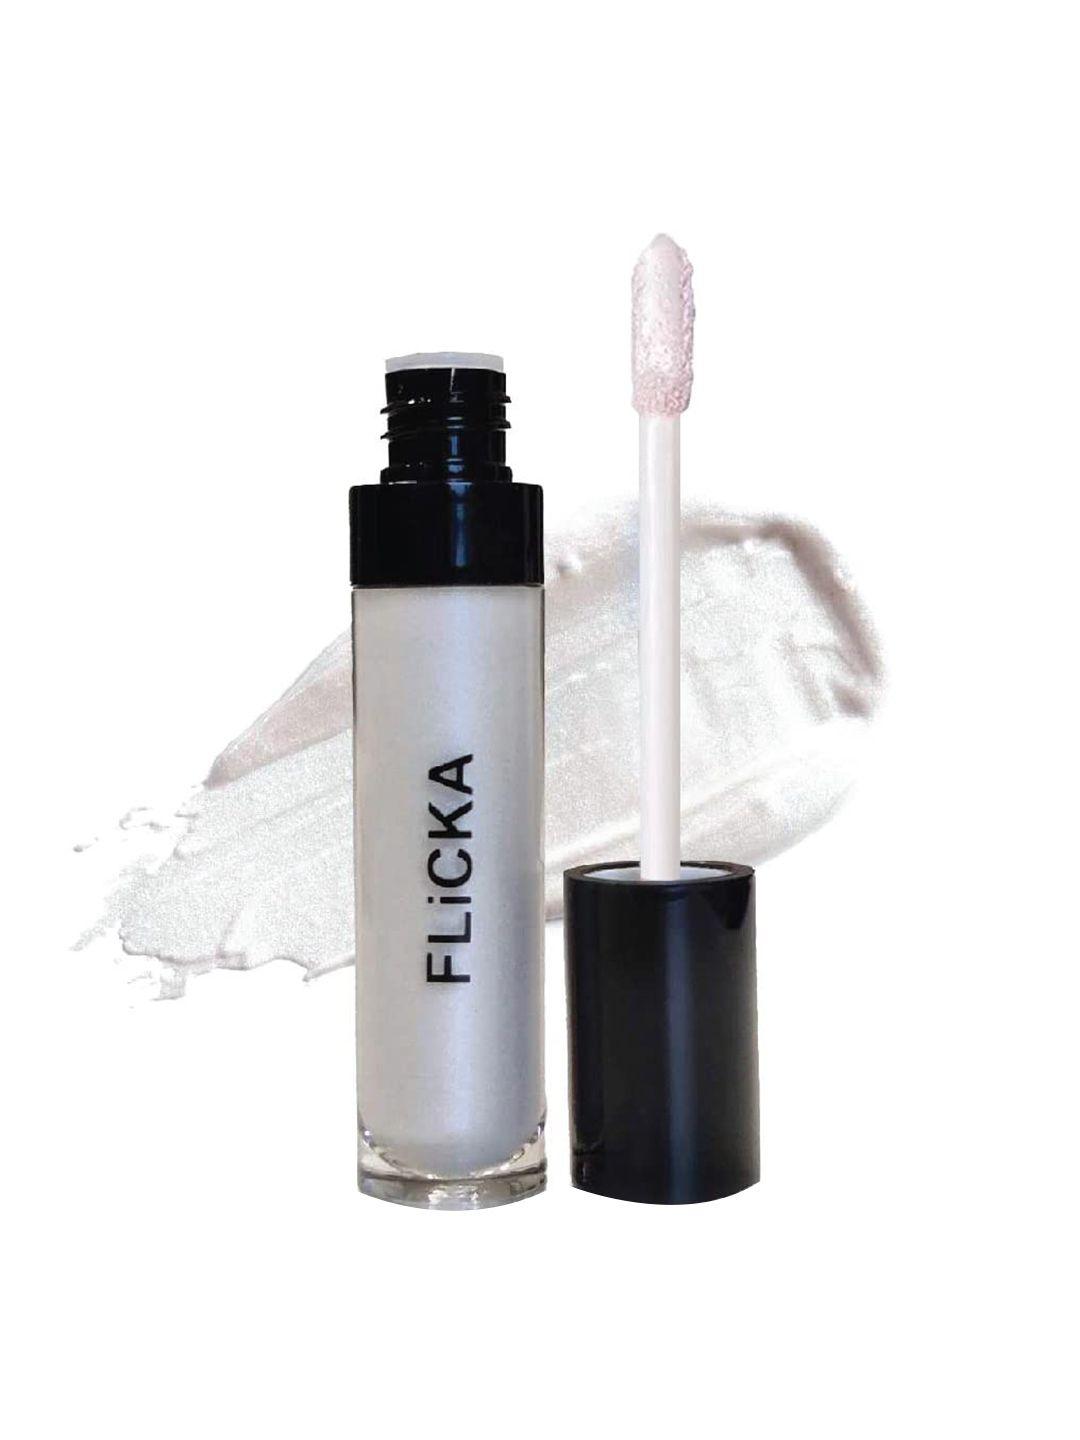 flicka high on shine liquid highlighter 9ml - silver